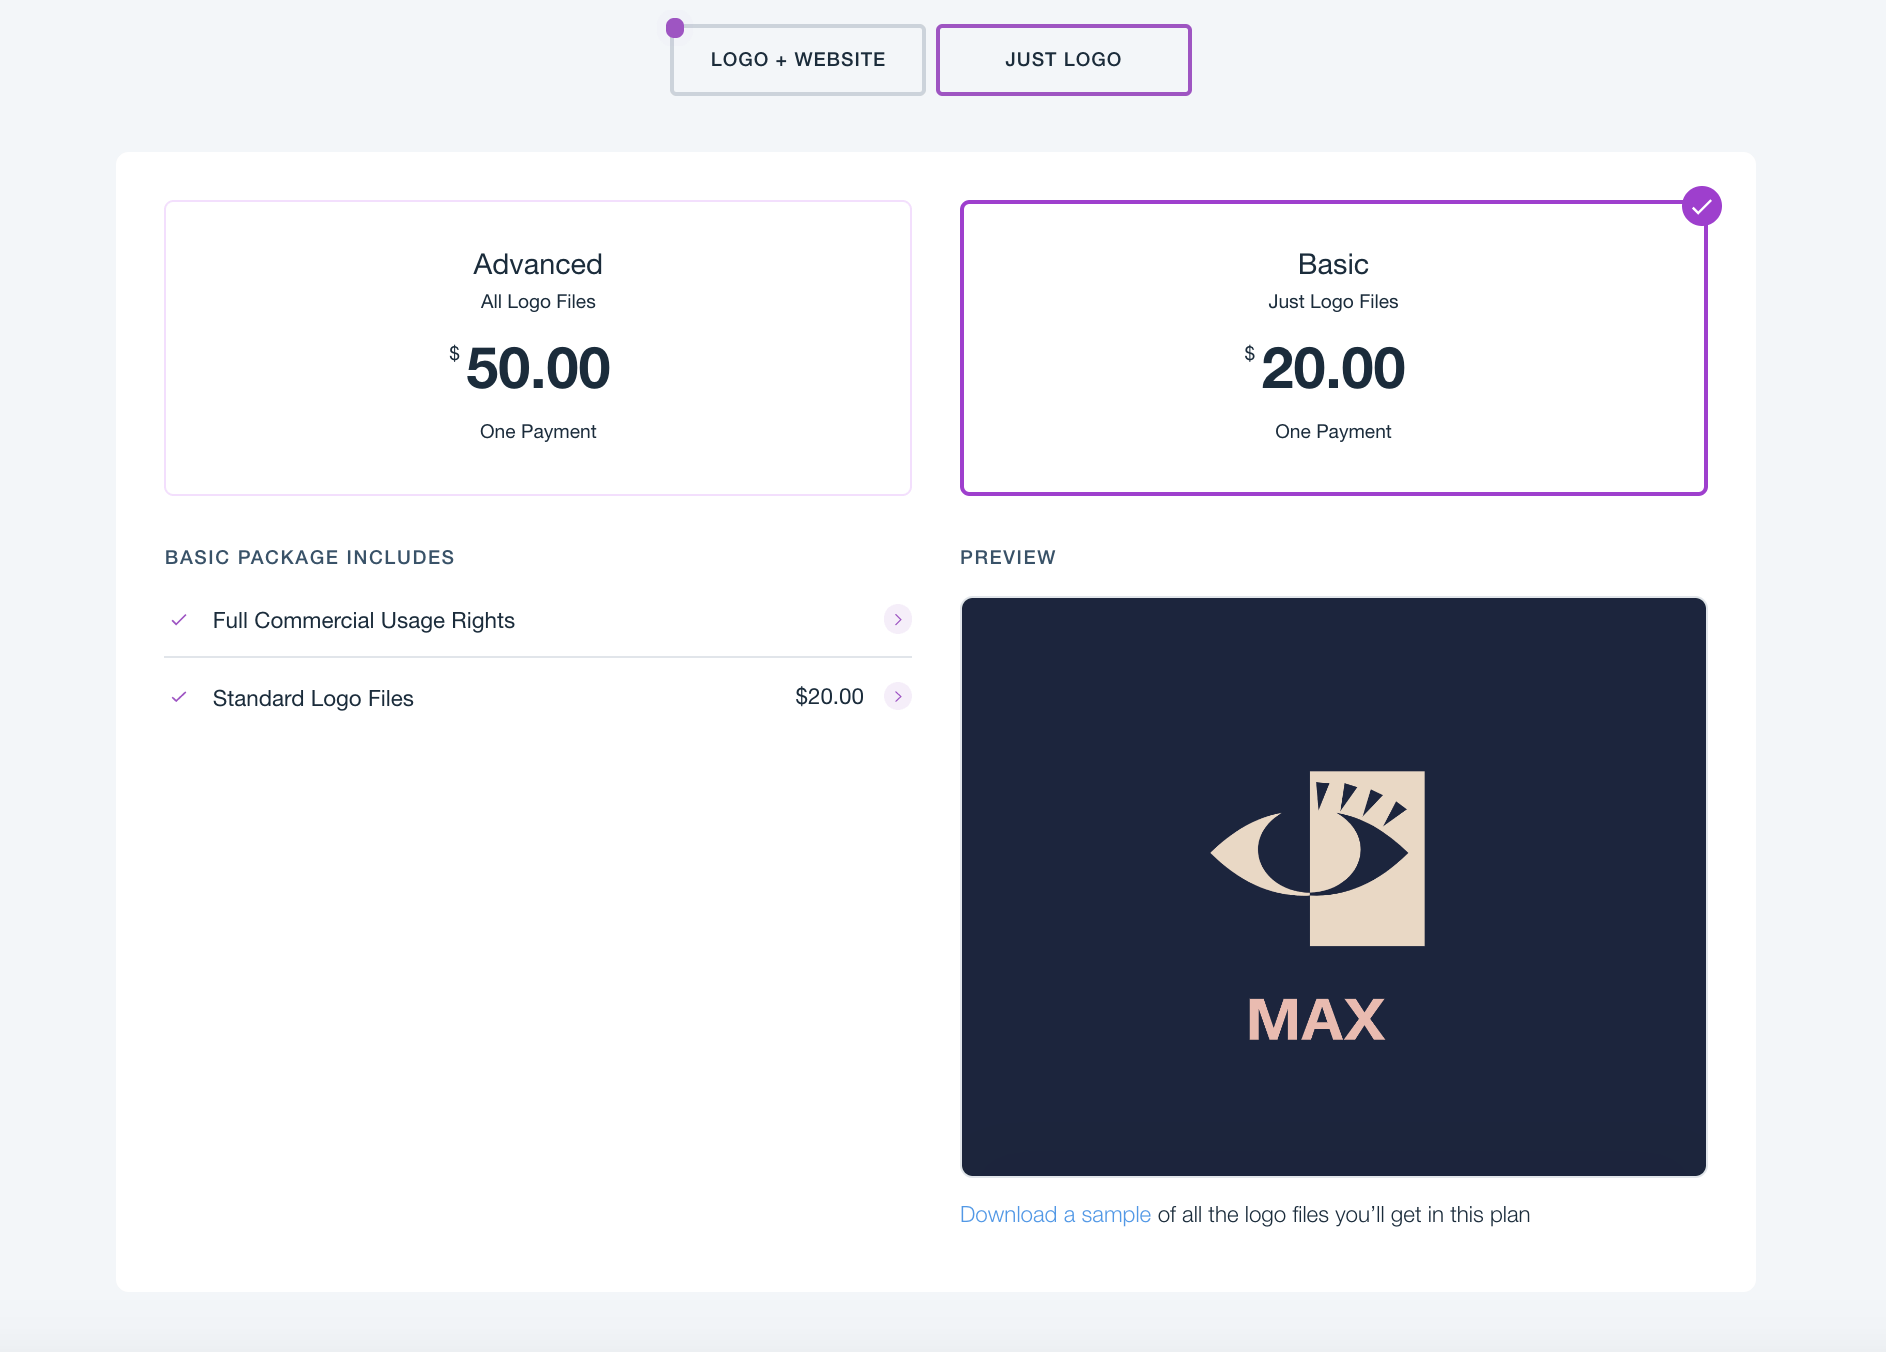 Wix Logo Maker pricing - Just Logo Basic Plan